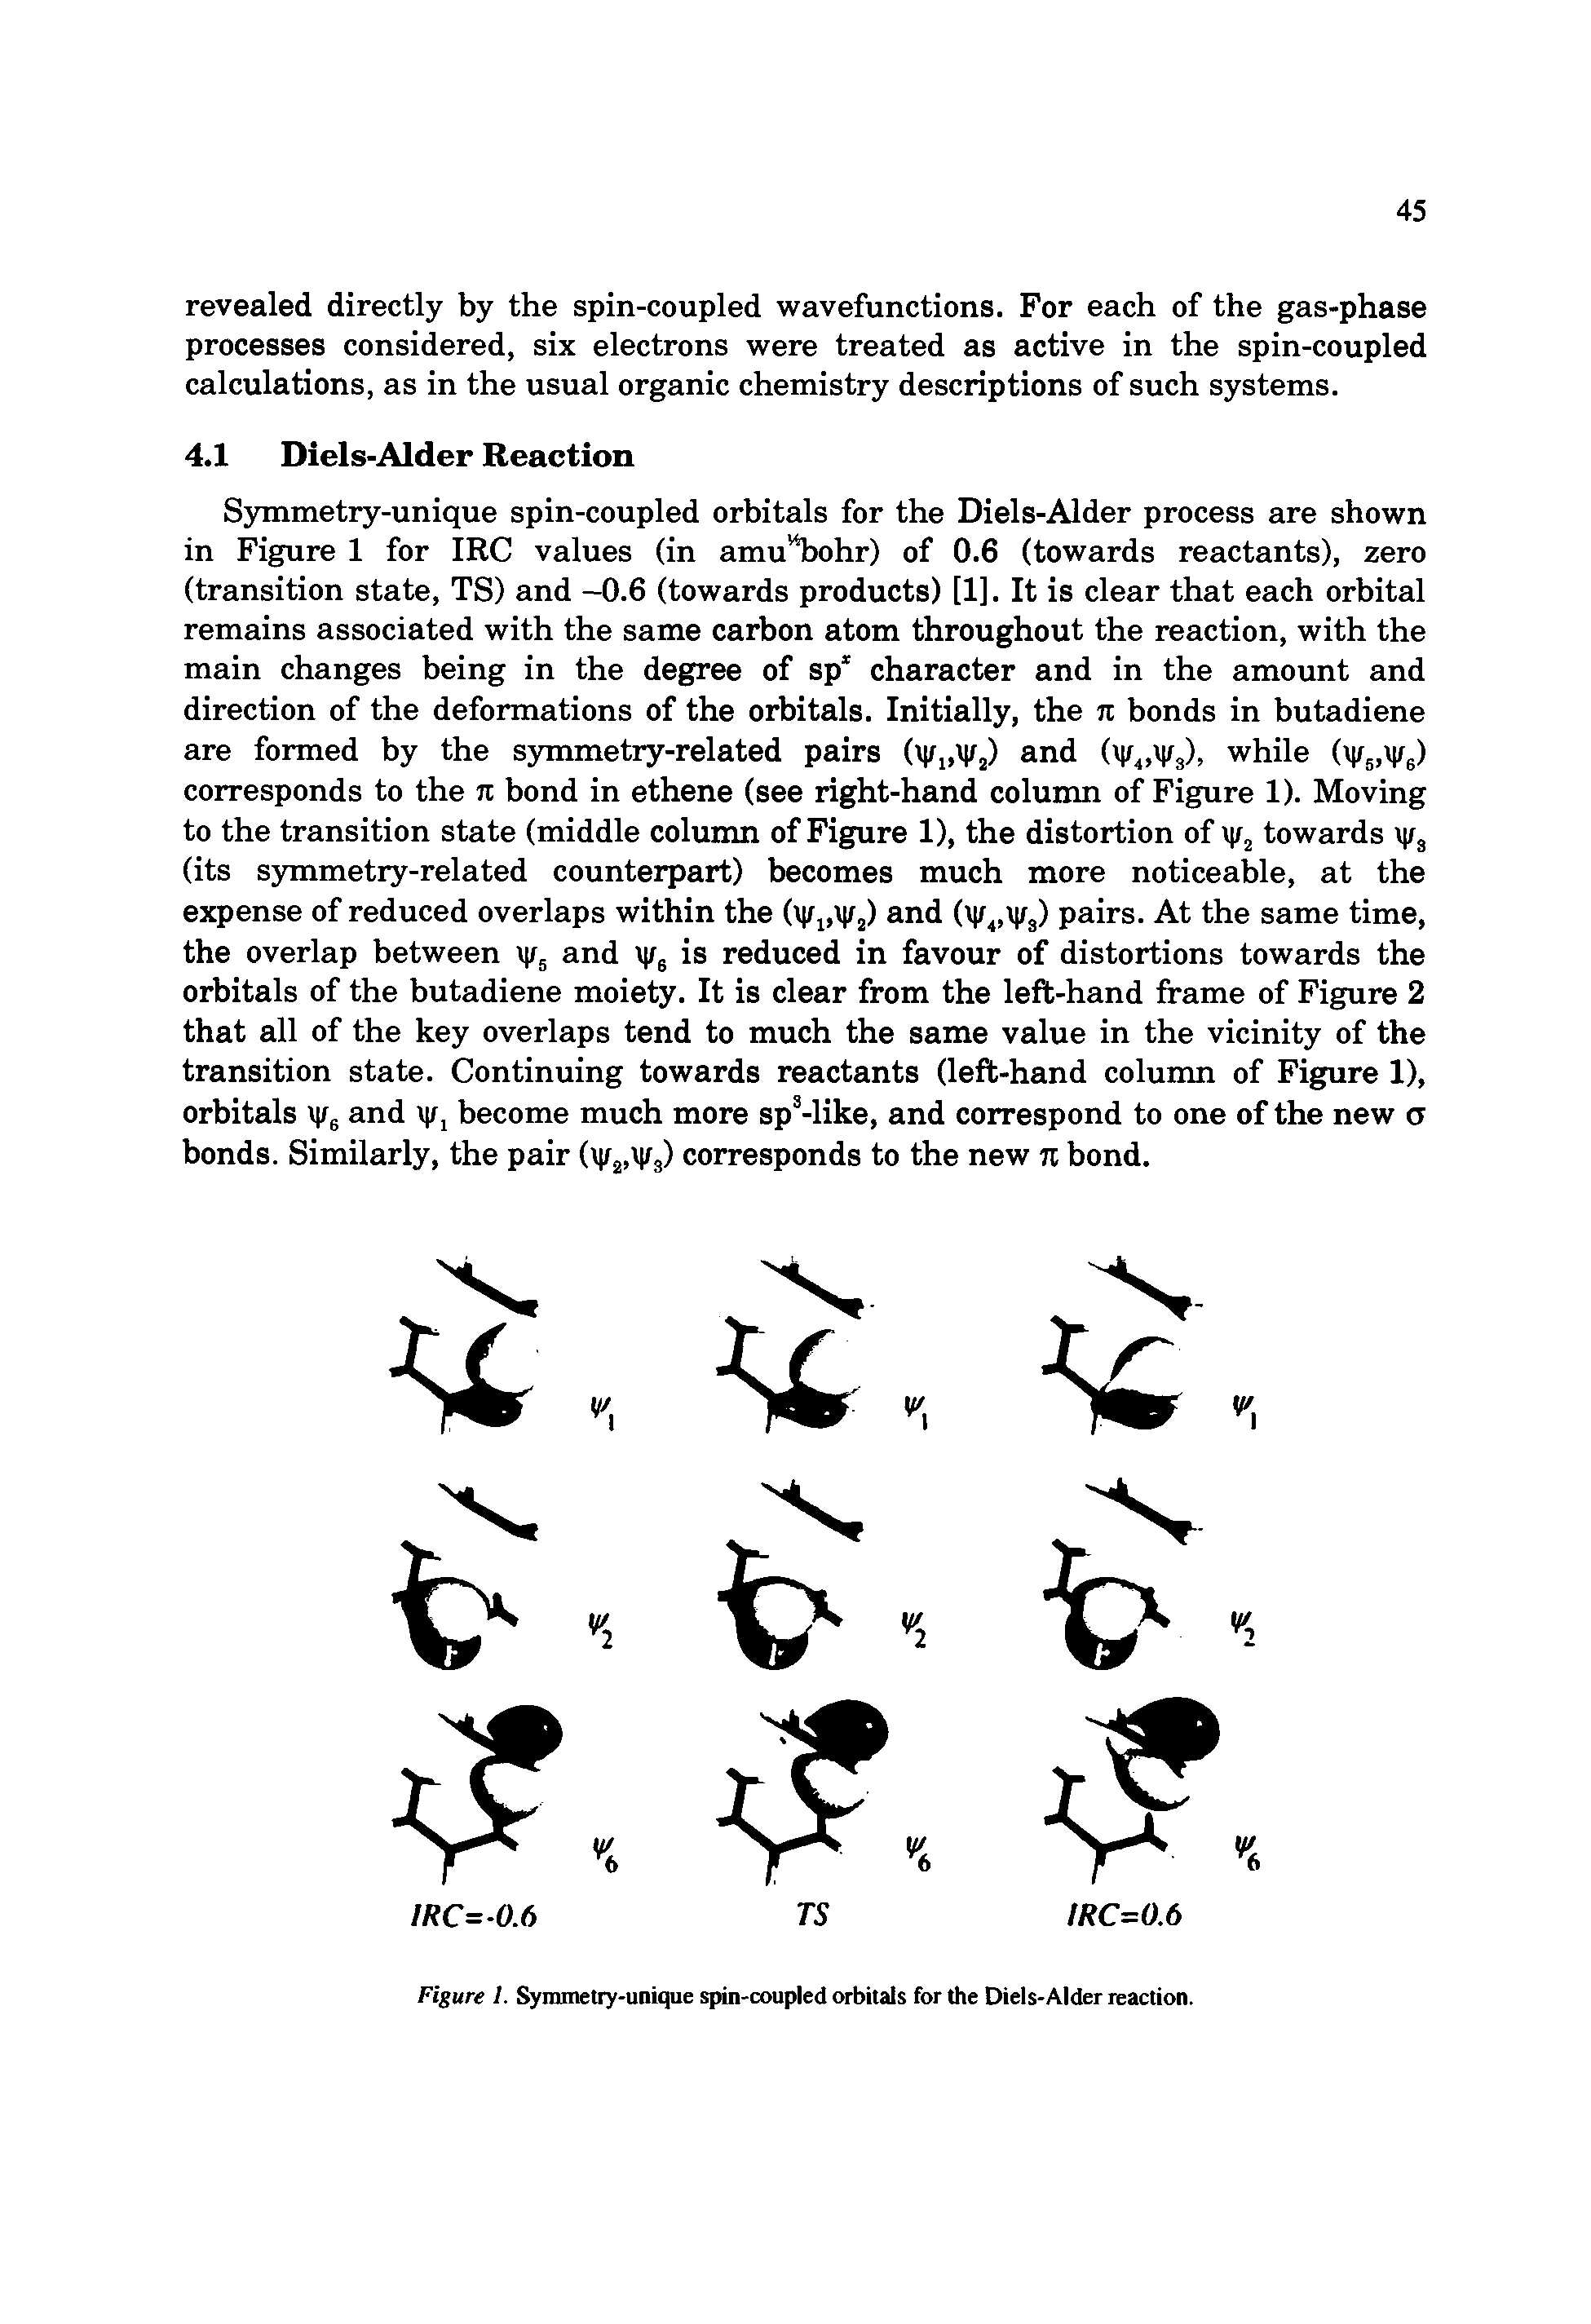 Figure 1. Symmetry-unique spin-coupled orbitals for the Diels-Alder reaction.